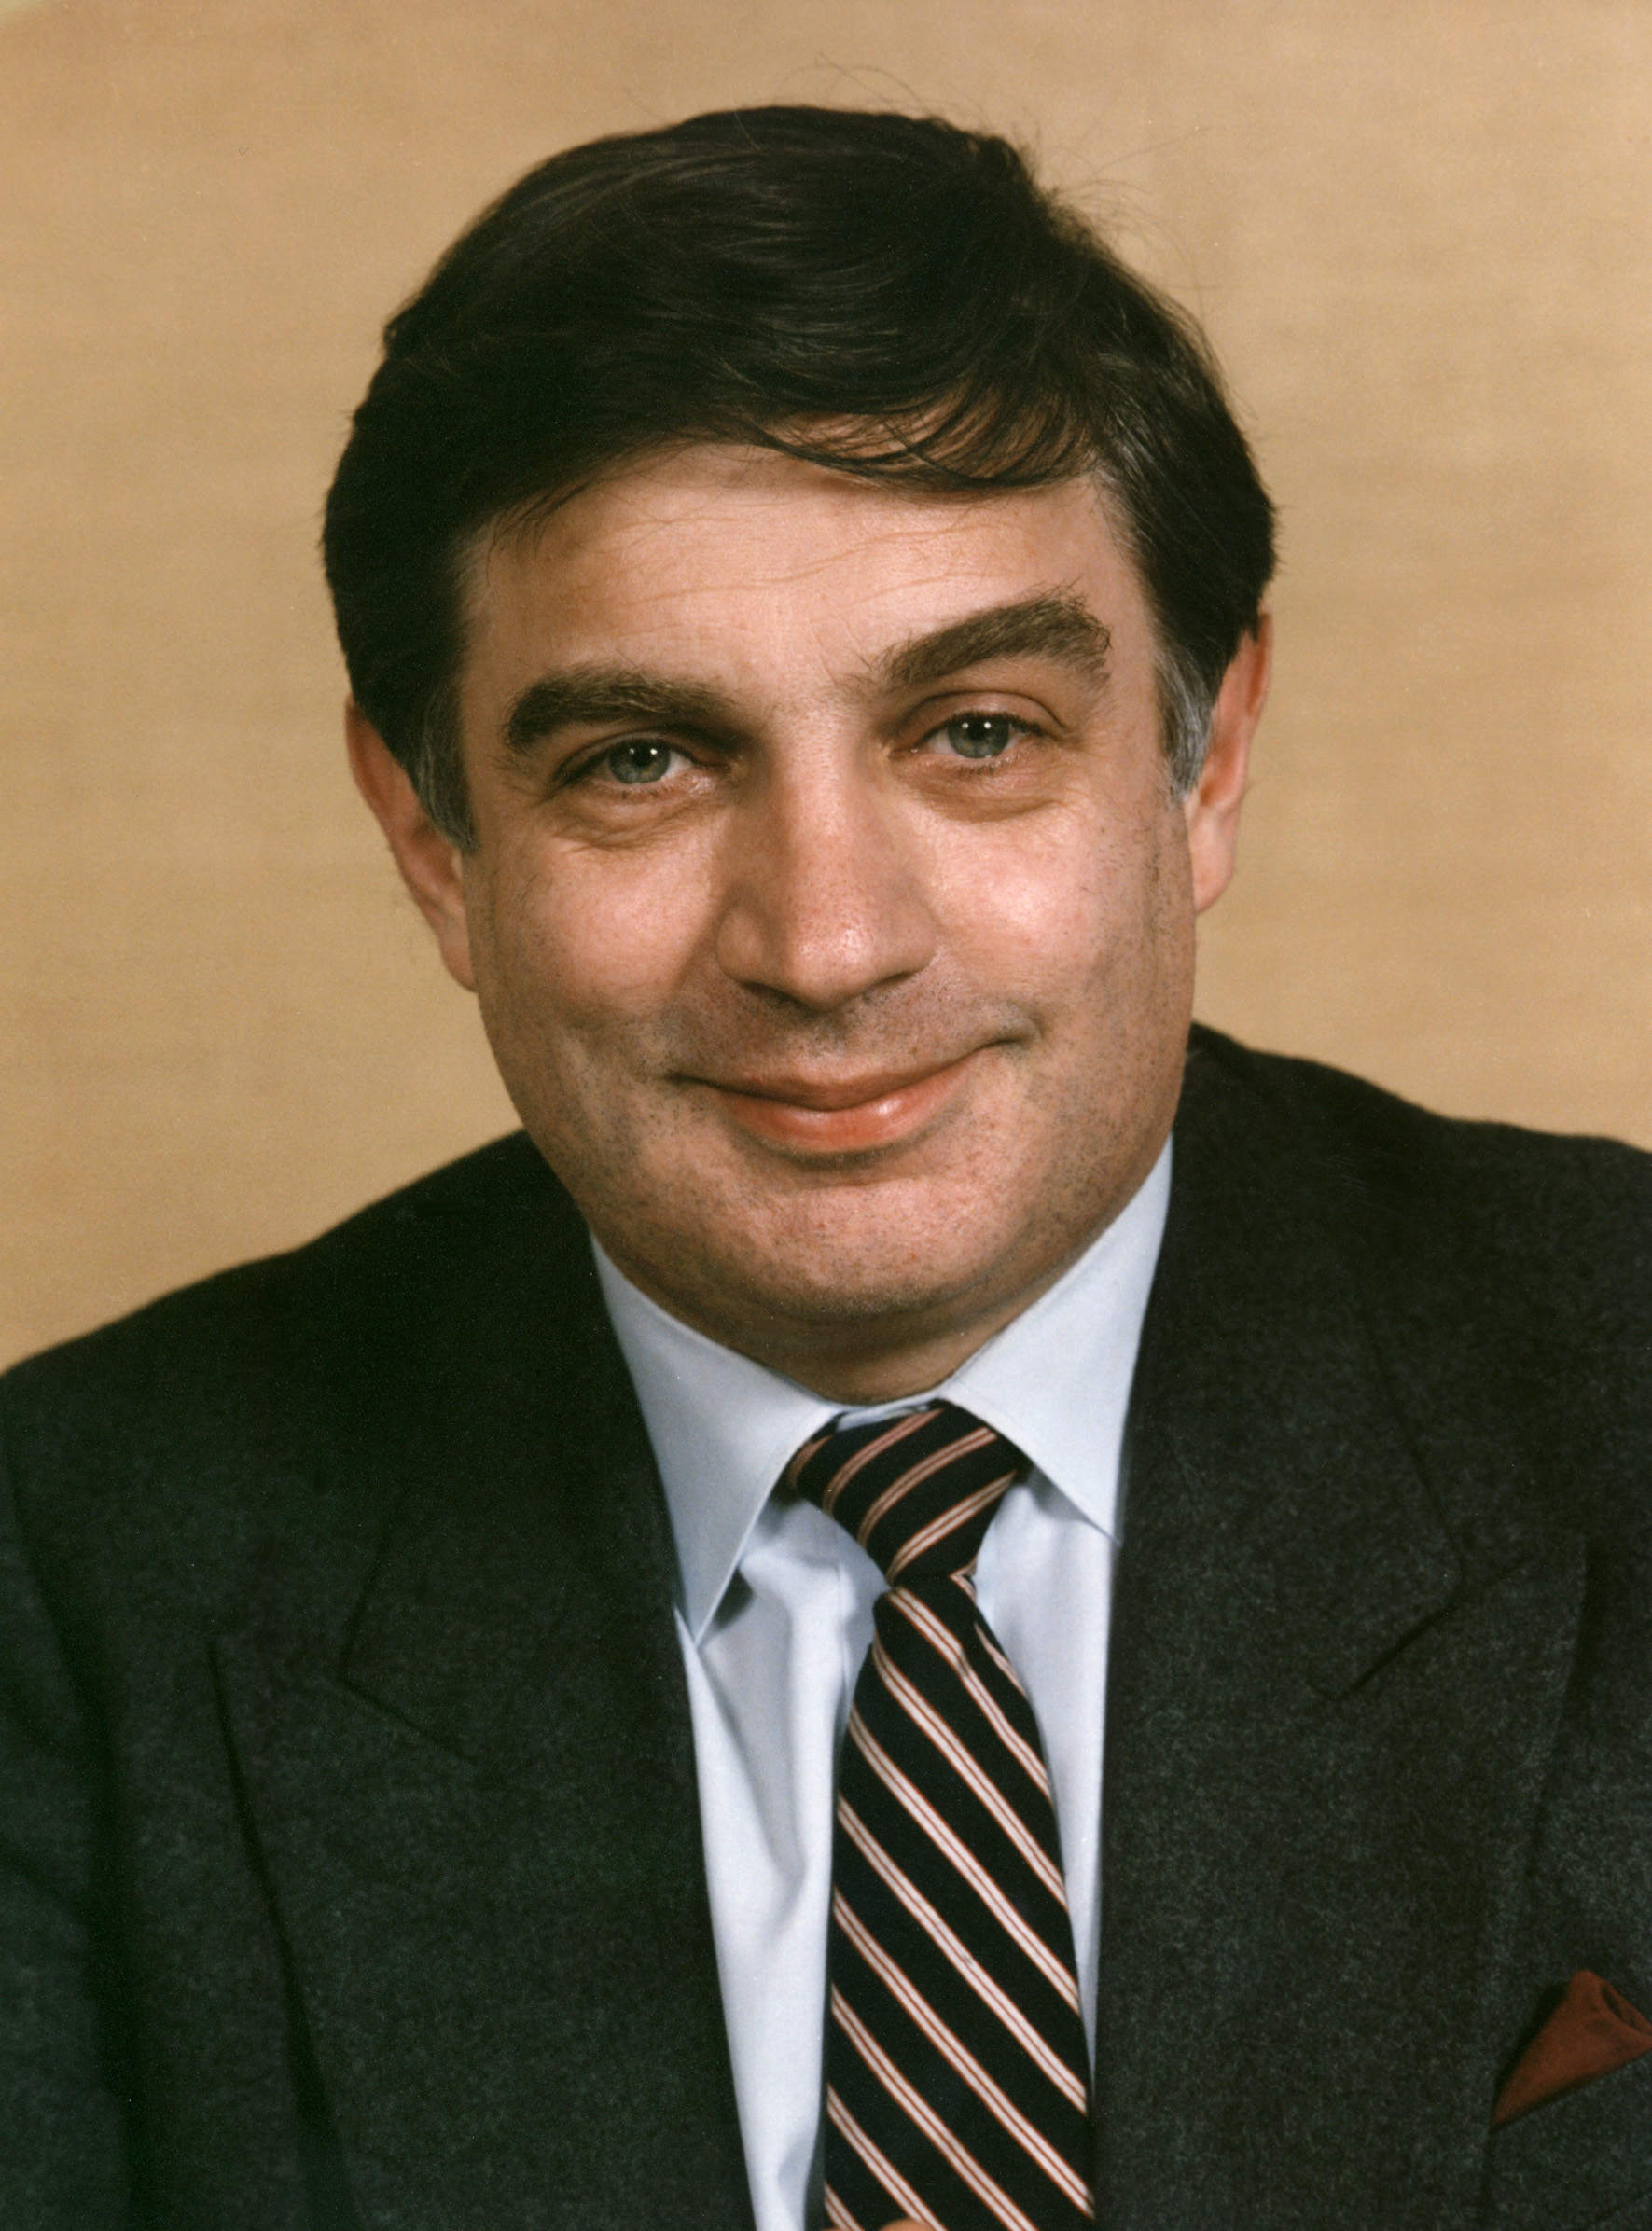 Official portrait, 1985